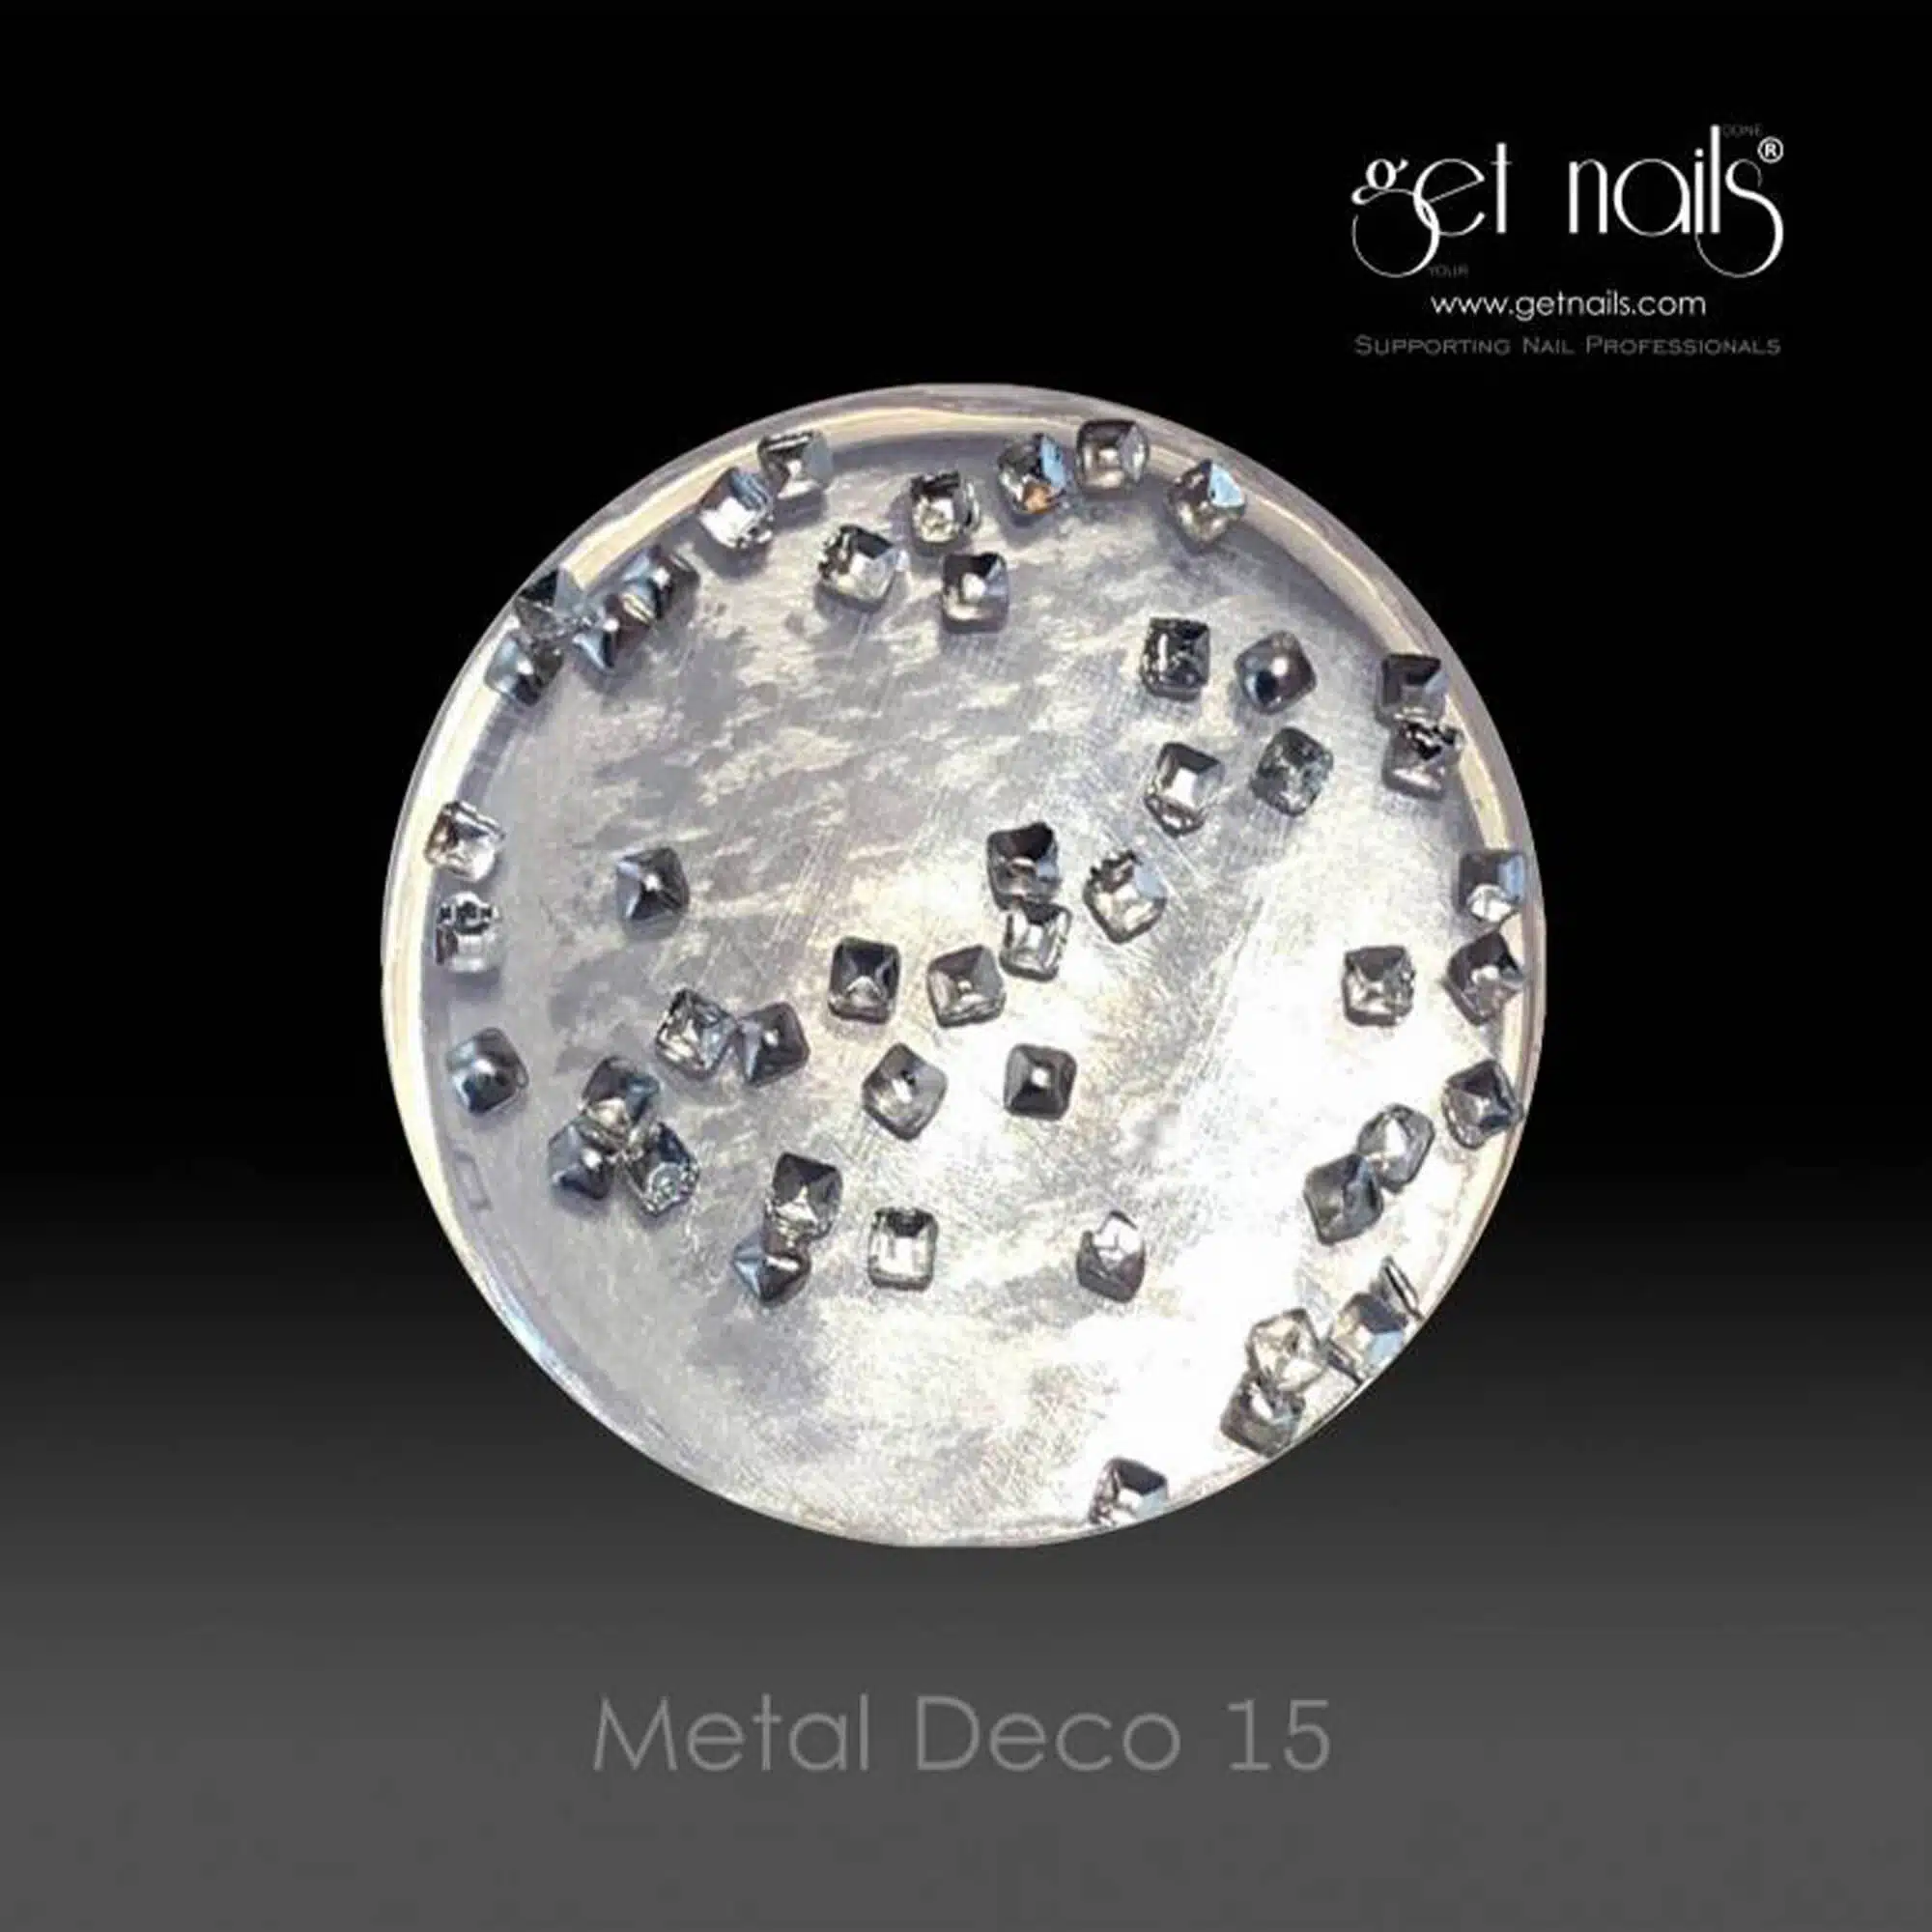 Get Nails Austria - Metal Deco 15 Silver, 50 pcs